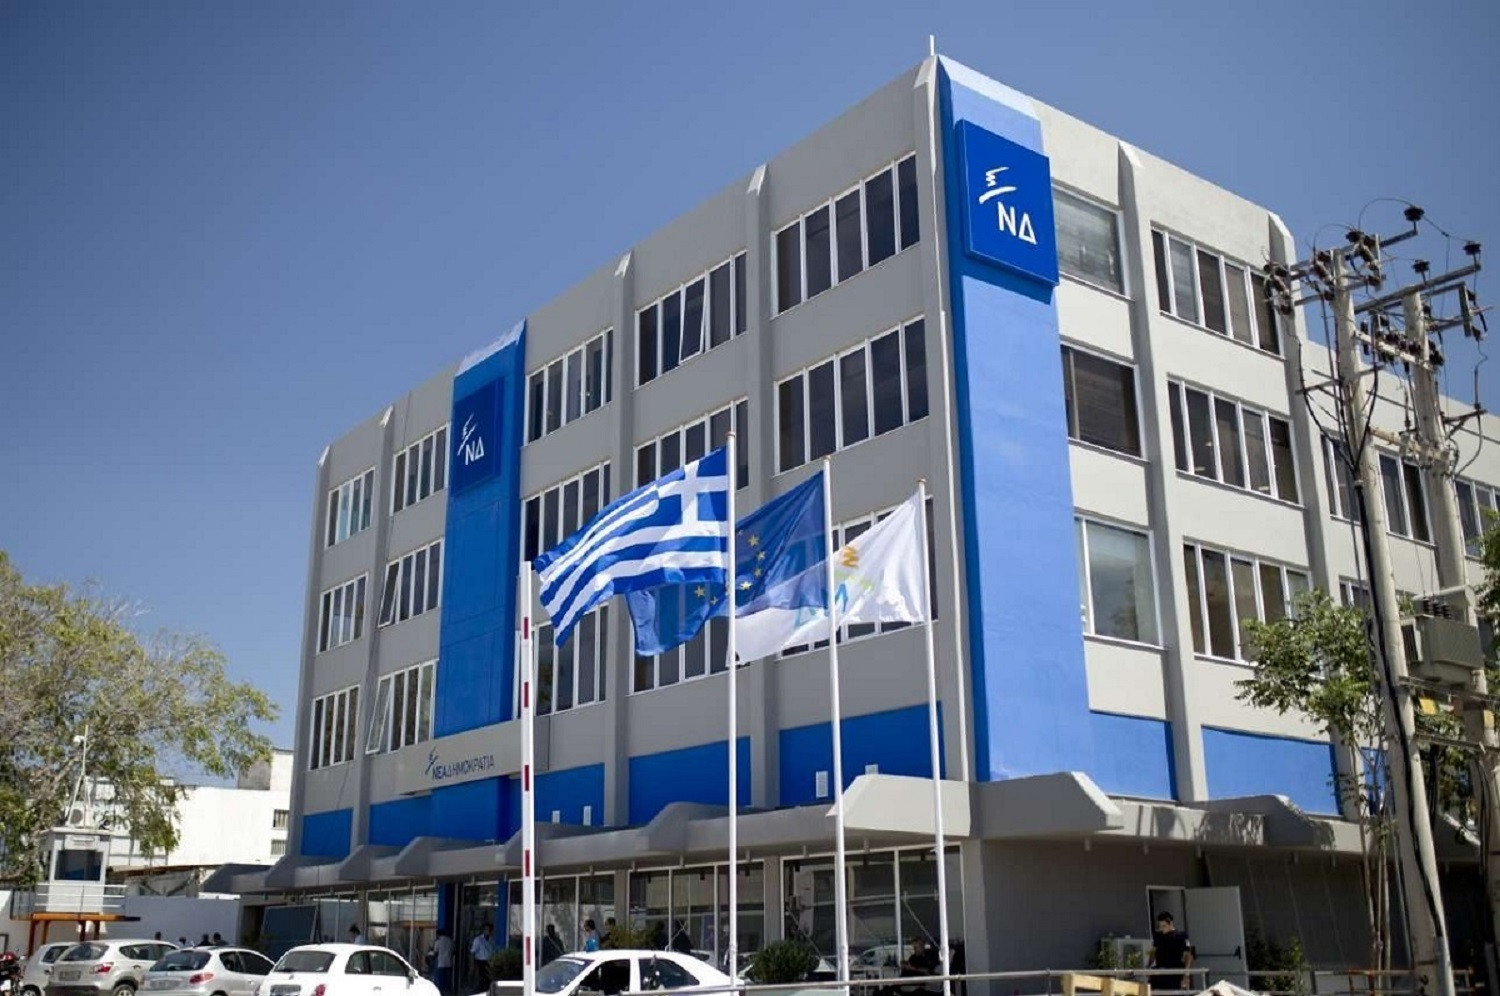 ΝΔ: Ο ελληνικός λαός με την ψήφο του ανάγκασε τον Τσίπρα να προκηρύξει εθνικές εκλογές